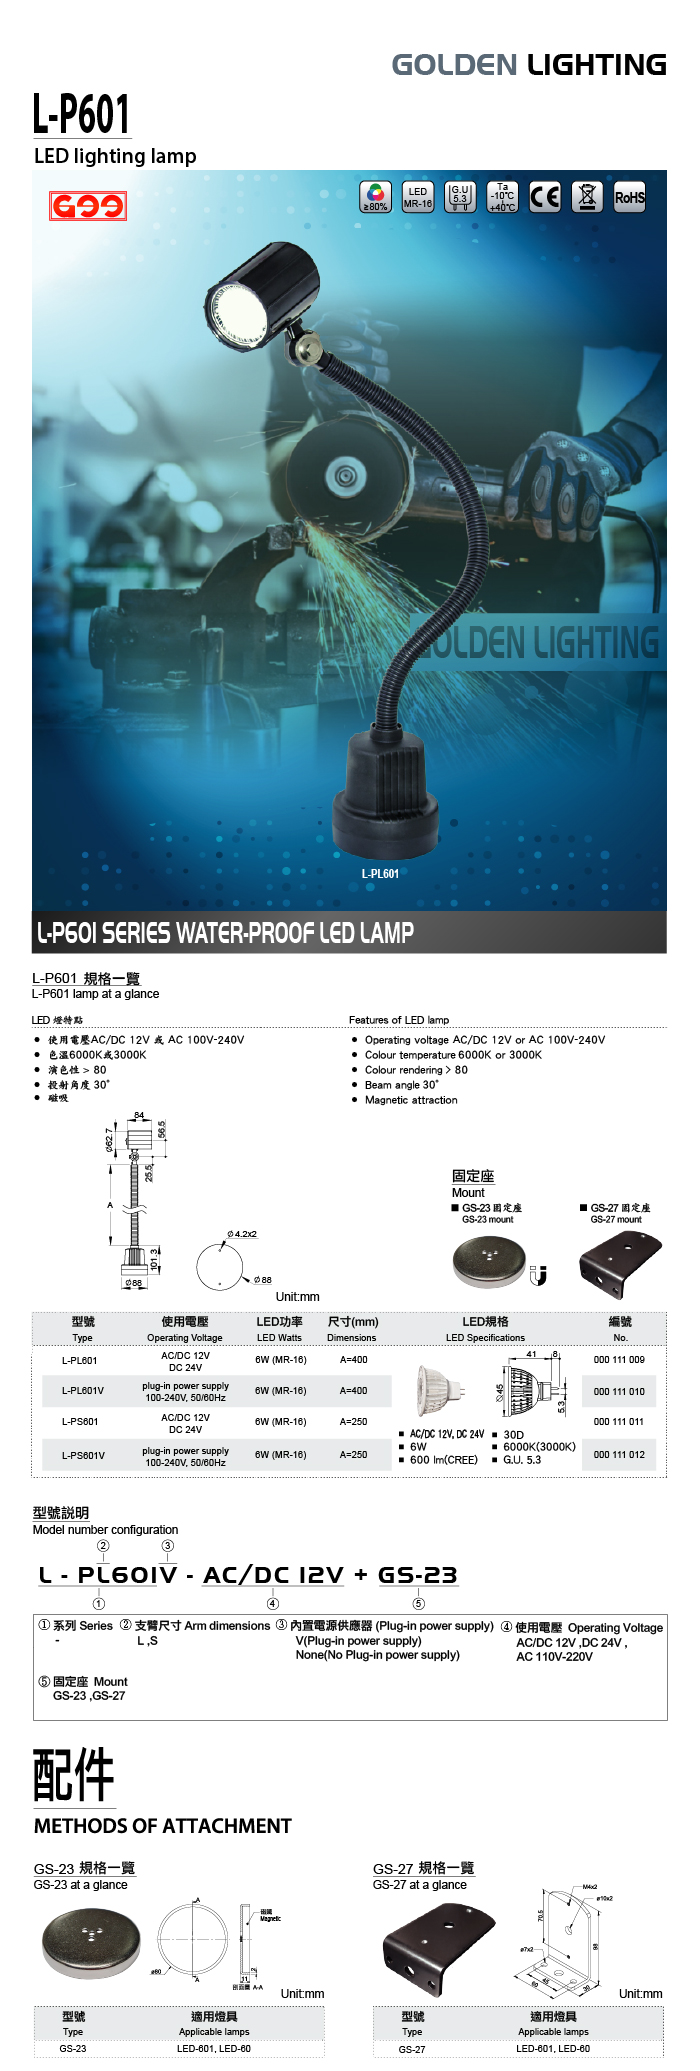 LED-P601 聚光型LED工作燈